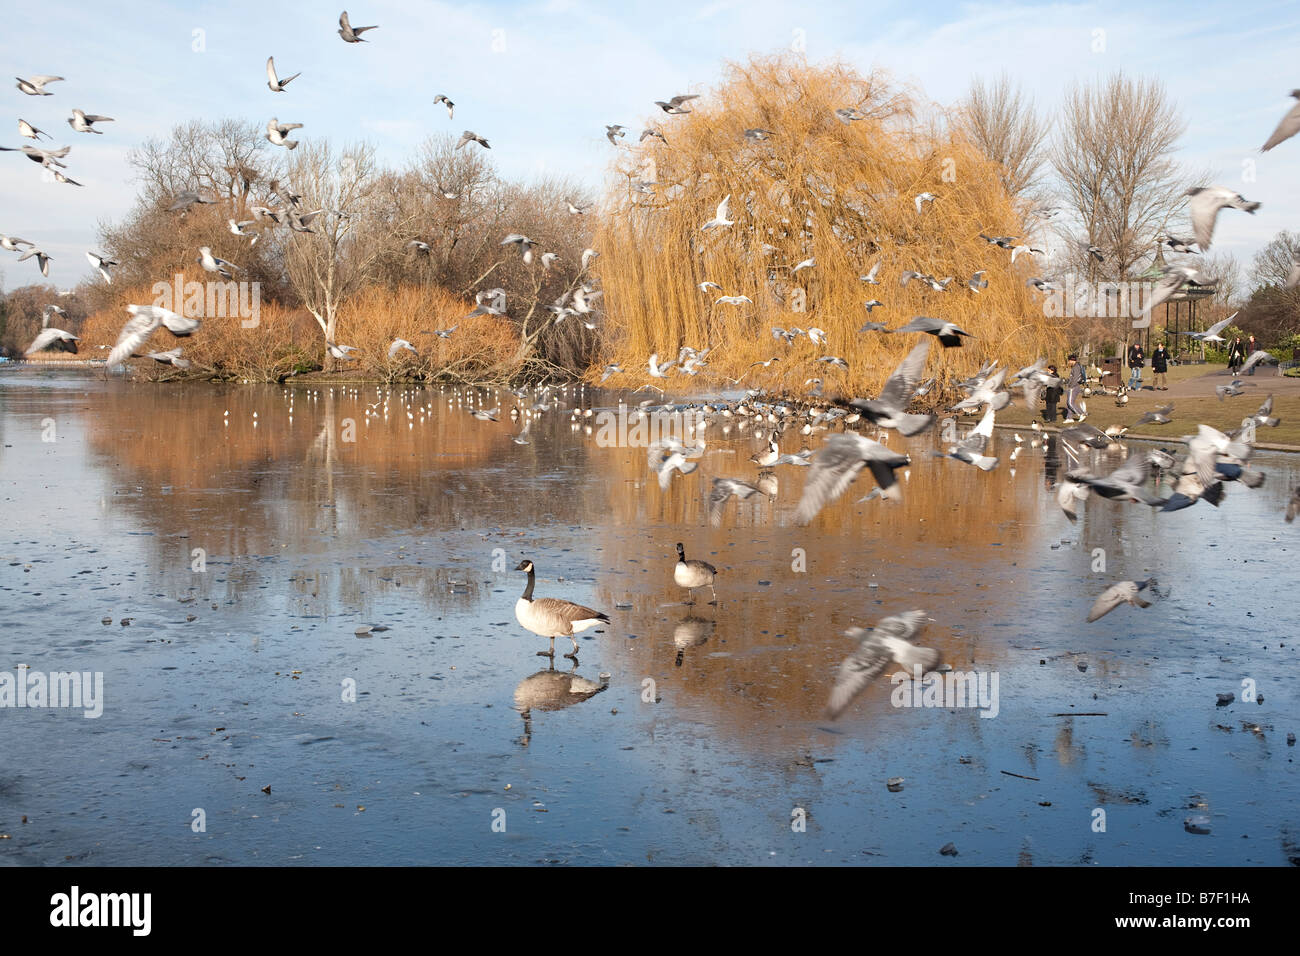 Gli uccelli volando sul lago ghiacciato in inverno il sole. Regents Park, Londra, Inghilterra, Regno Unito Foto Stock